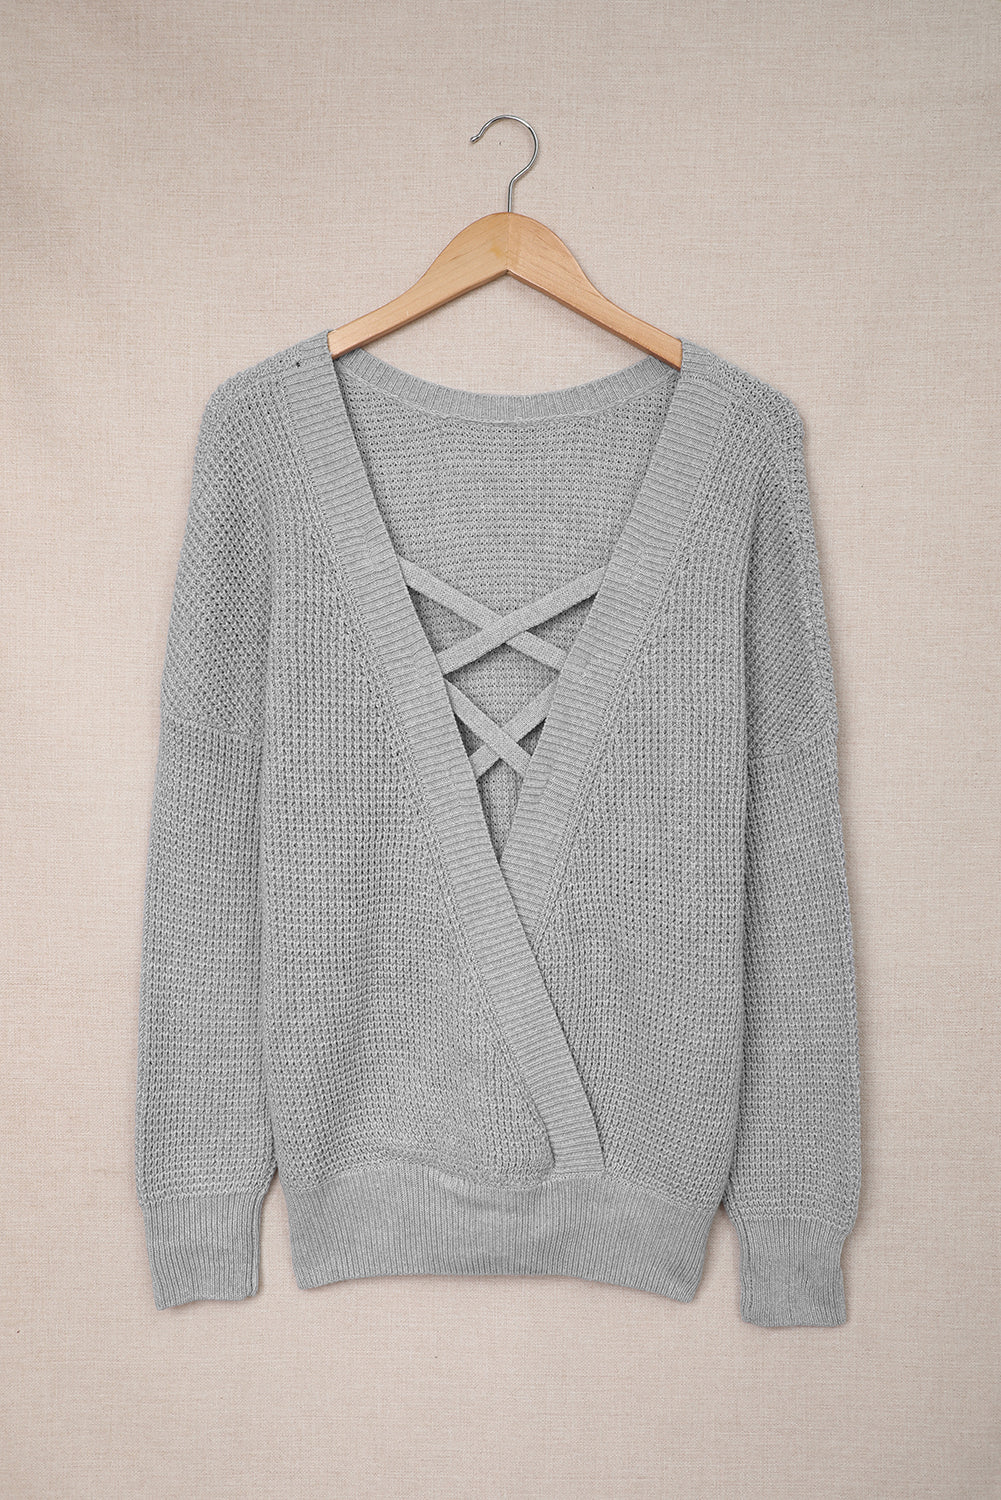 Siv pulover z izdolbenim hrbtom v križu